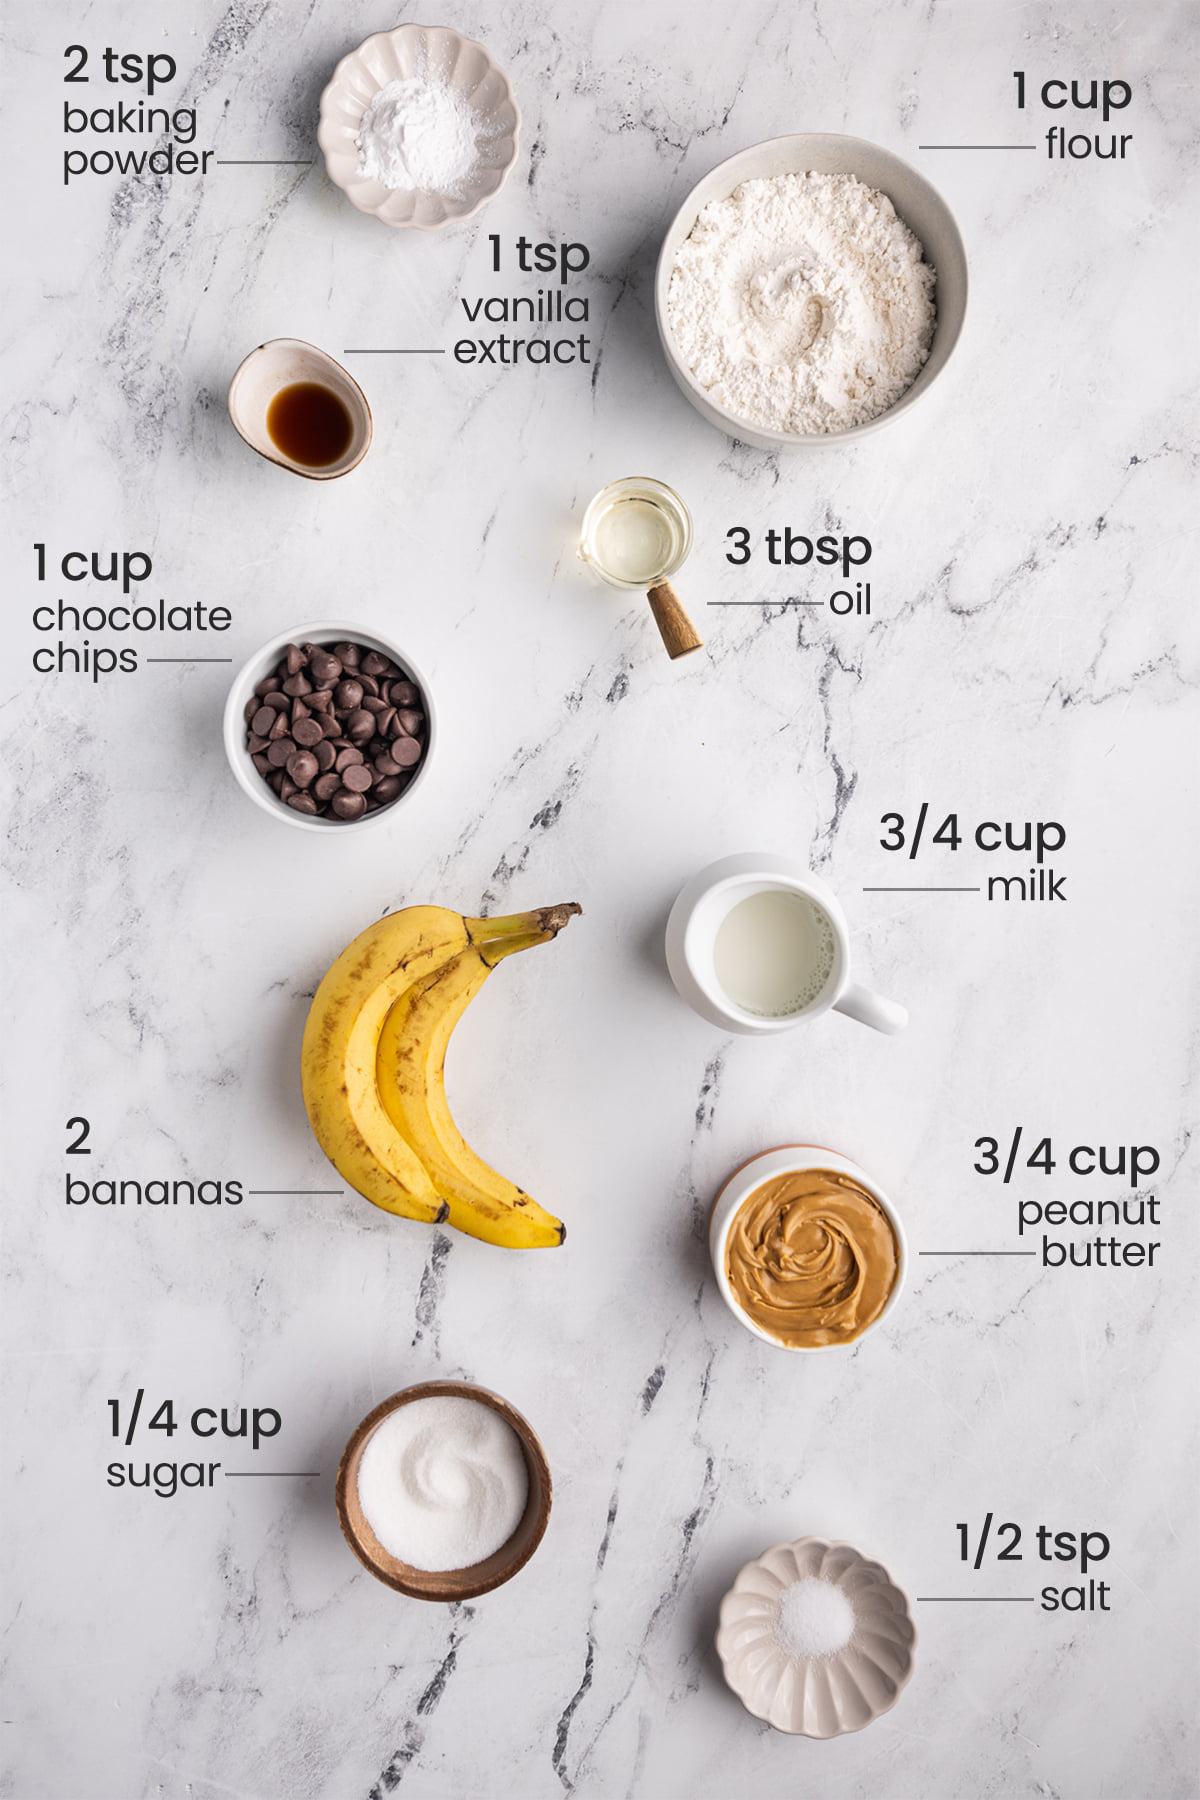 ingredients for peanut butter banana chocolate chip muffins - baking powder, flour, vanilla extract, chocolate chips, oil, milk, bananas, peanut butter, sugar, salt